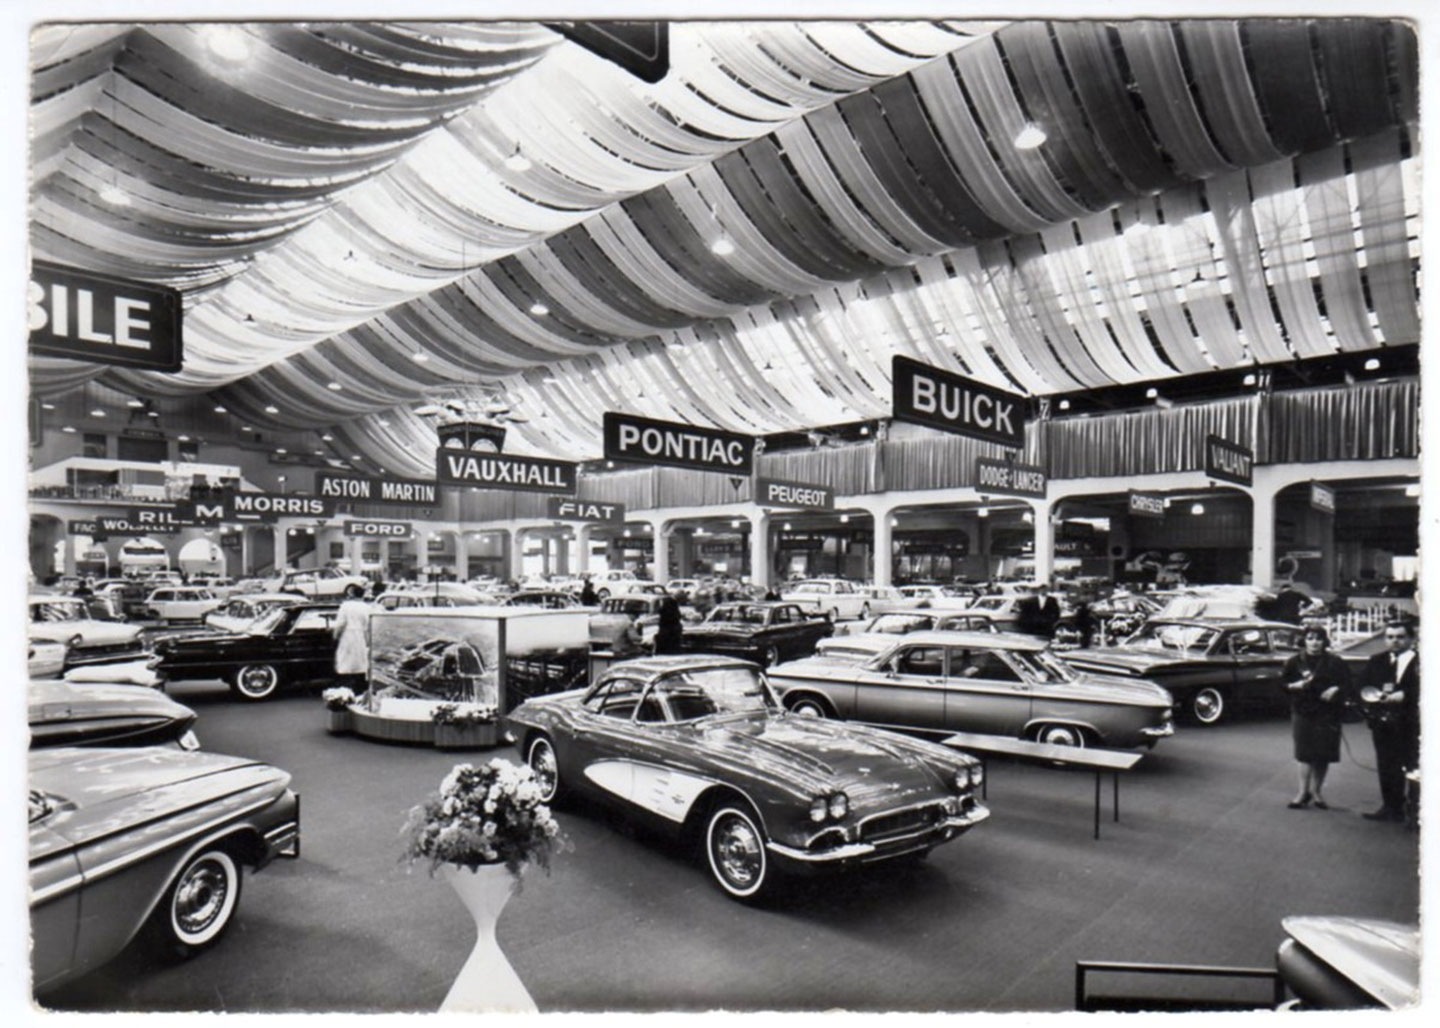 Geneva Motor Show in the past